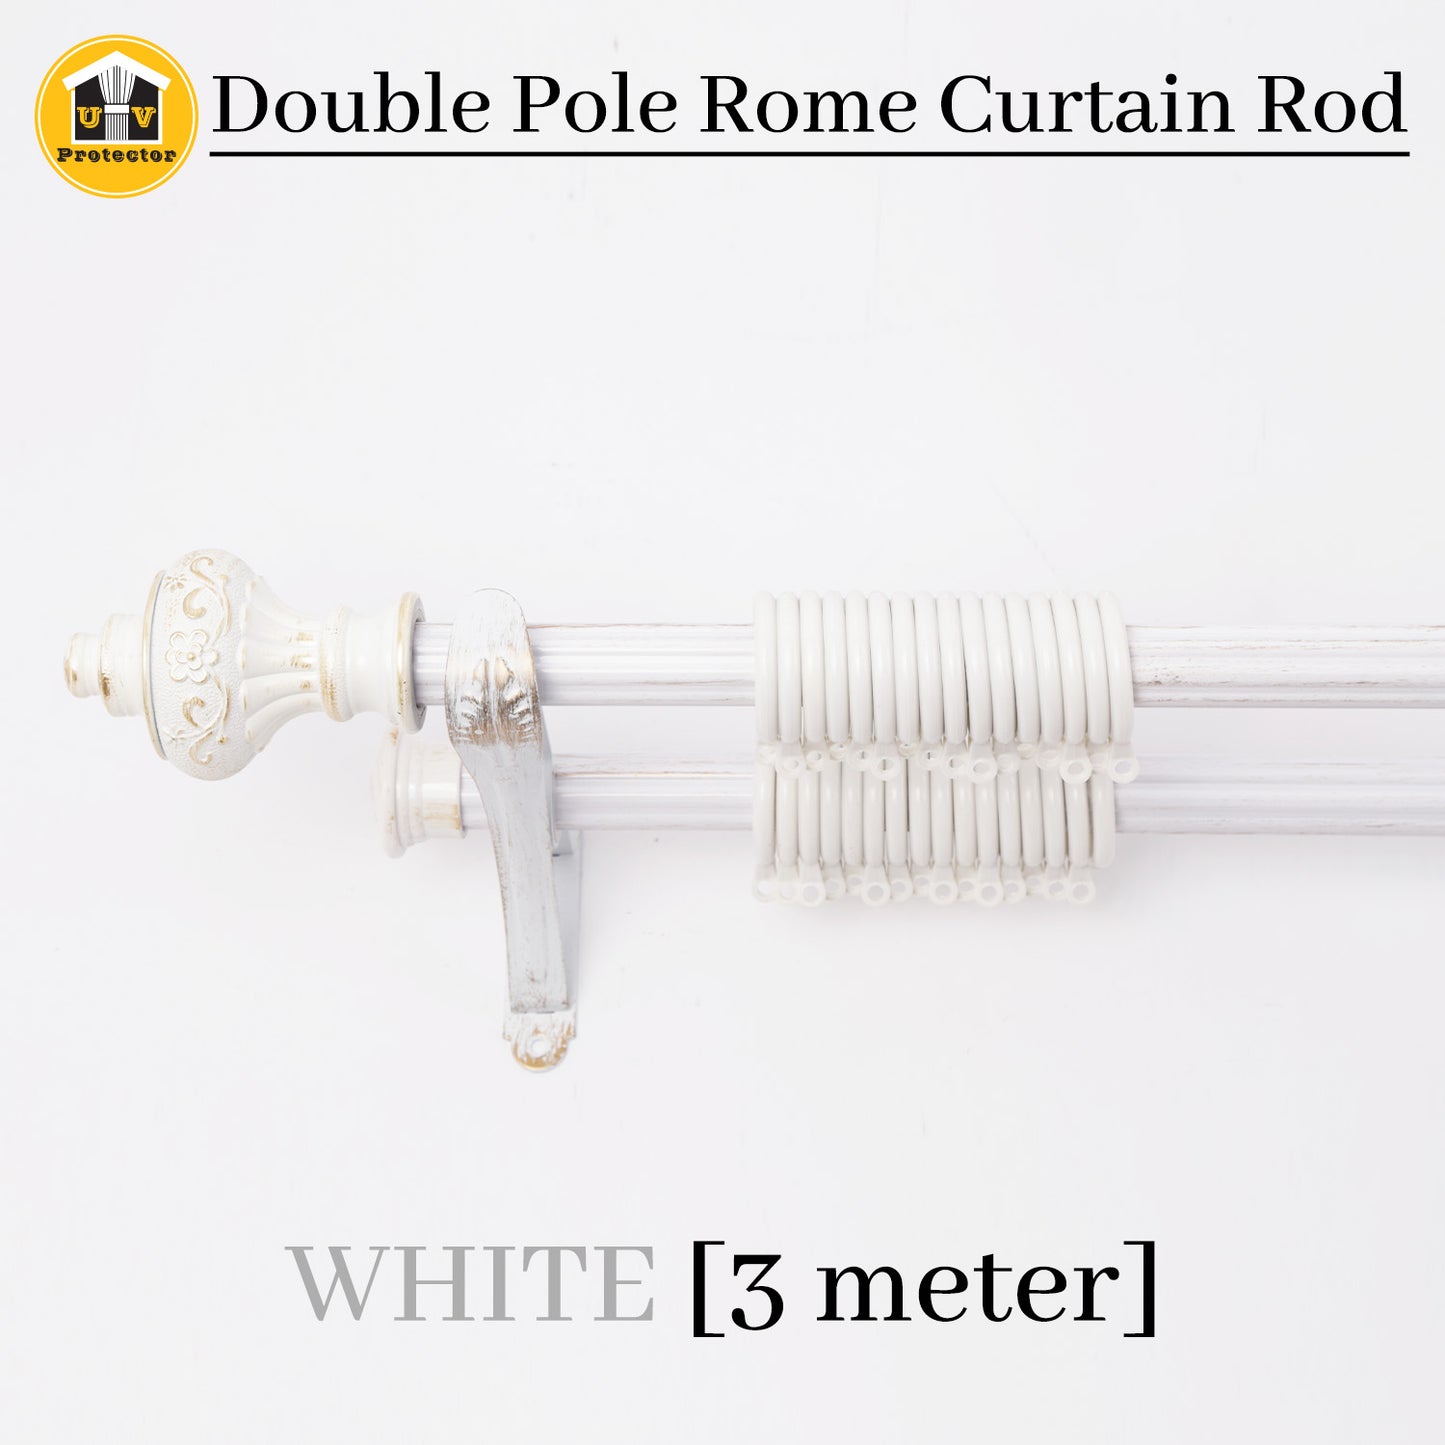 UVP Curtain Double Pole Rome Curtain Rod